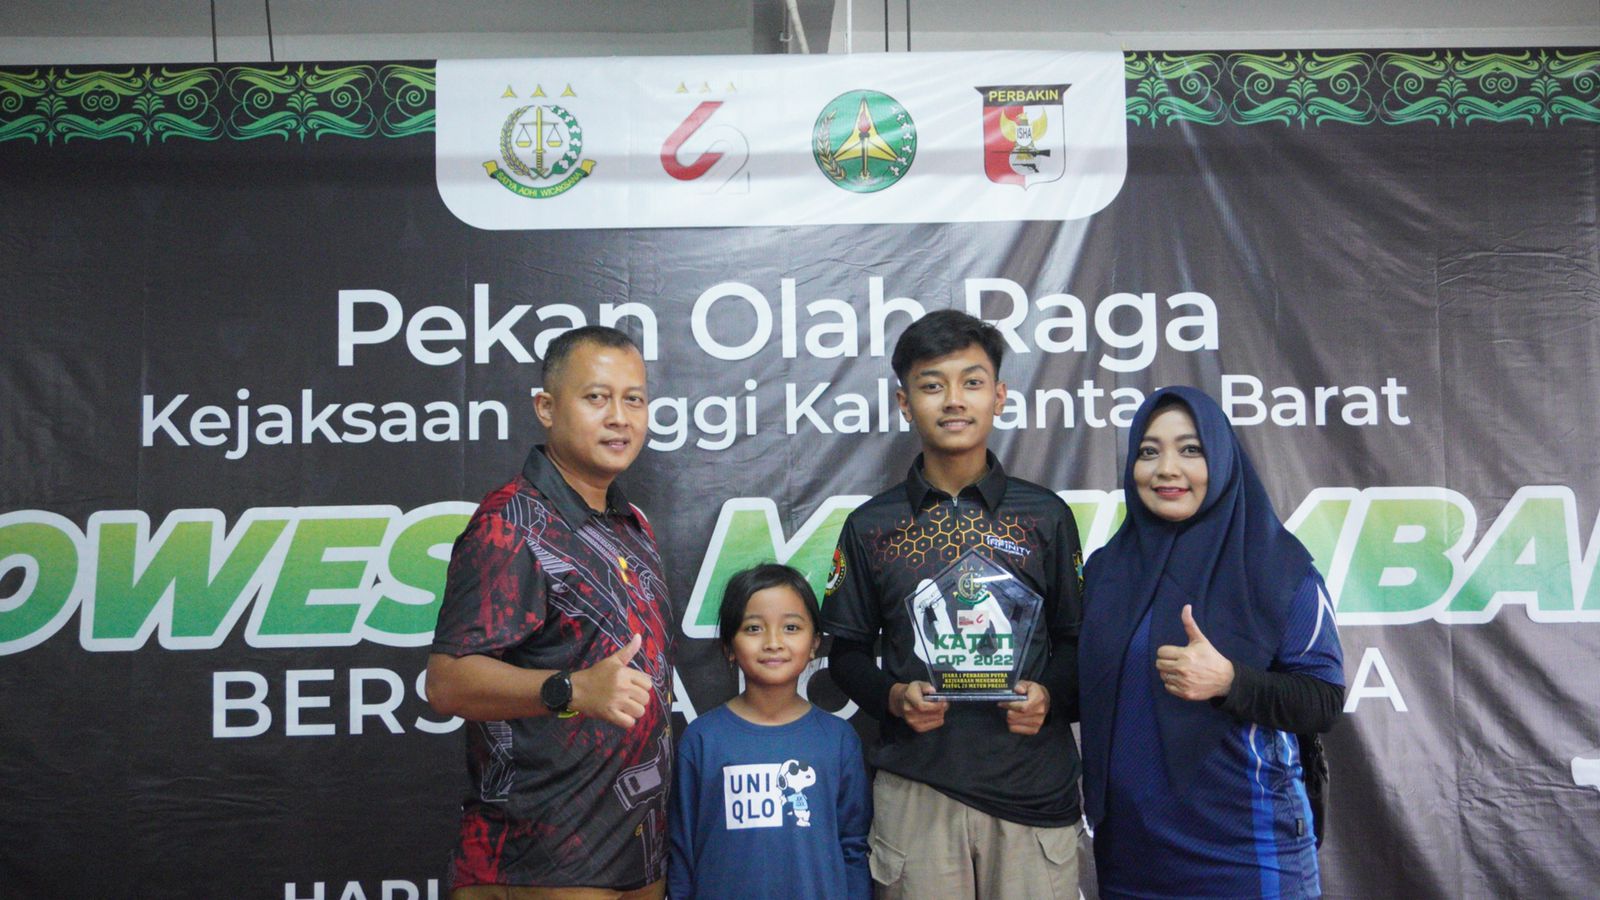 Muhammad Arvin Rajendra Hafizh berfoto bersama ayah, ibu dan adiknya usai berhasil menyabet juara satu pada Kejuaraan Menembak Kajati Kalbar Cup 2022 yang digelar oleh Kejaksaan Tinggi Kalimantan Barat, Jumat (15/07/2022) lalu. (Foto: Istimewa)